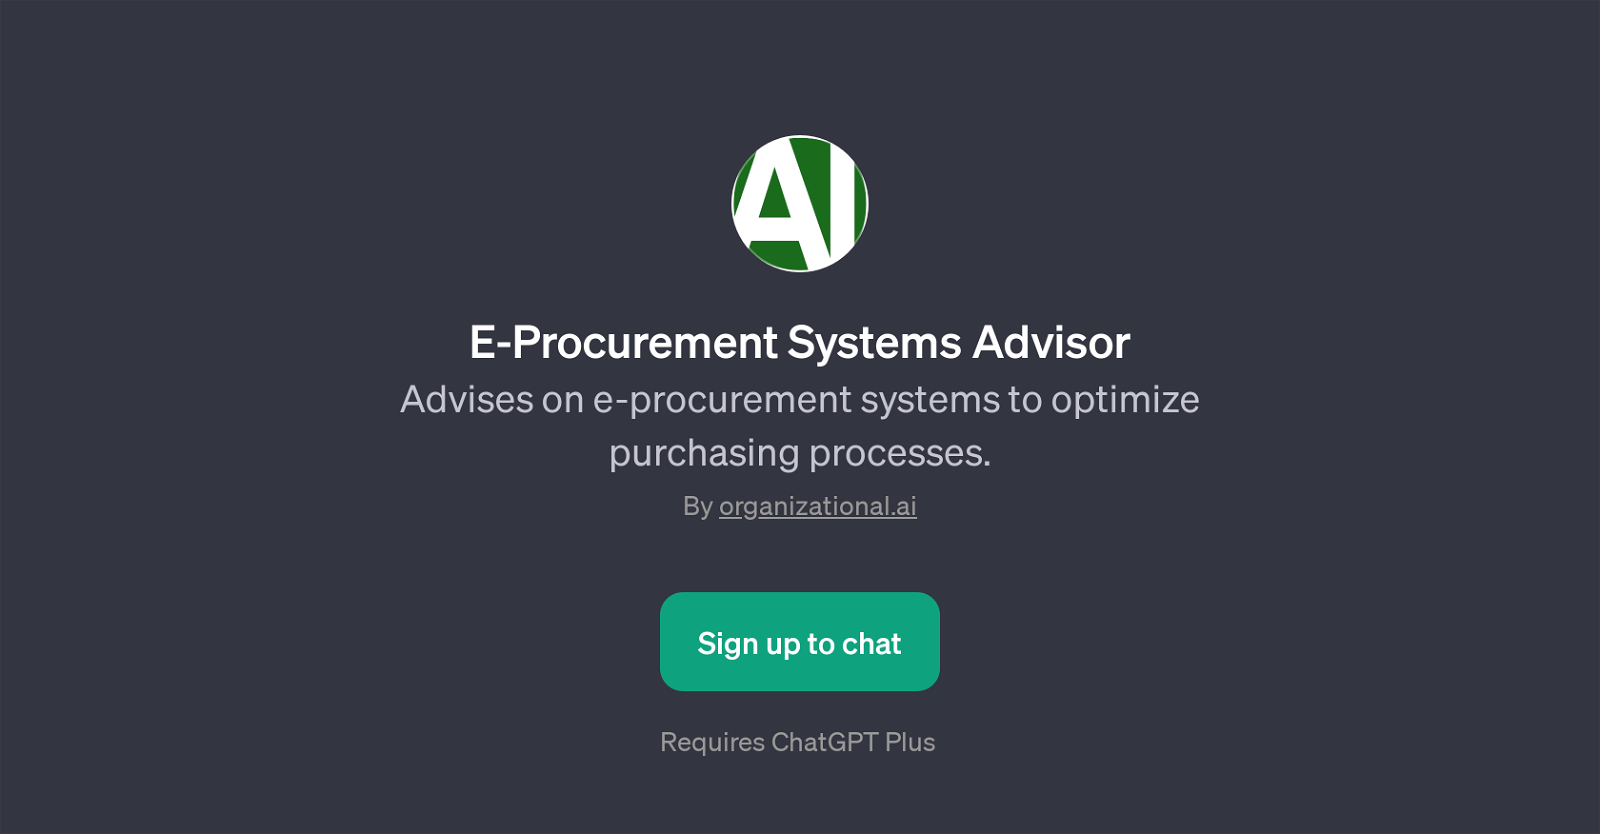 E-Procurement Systems Advisor website